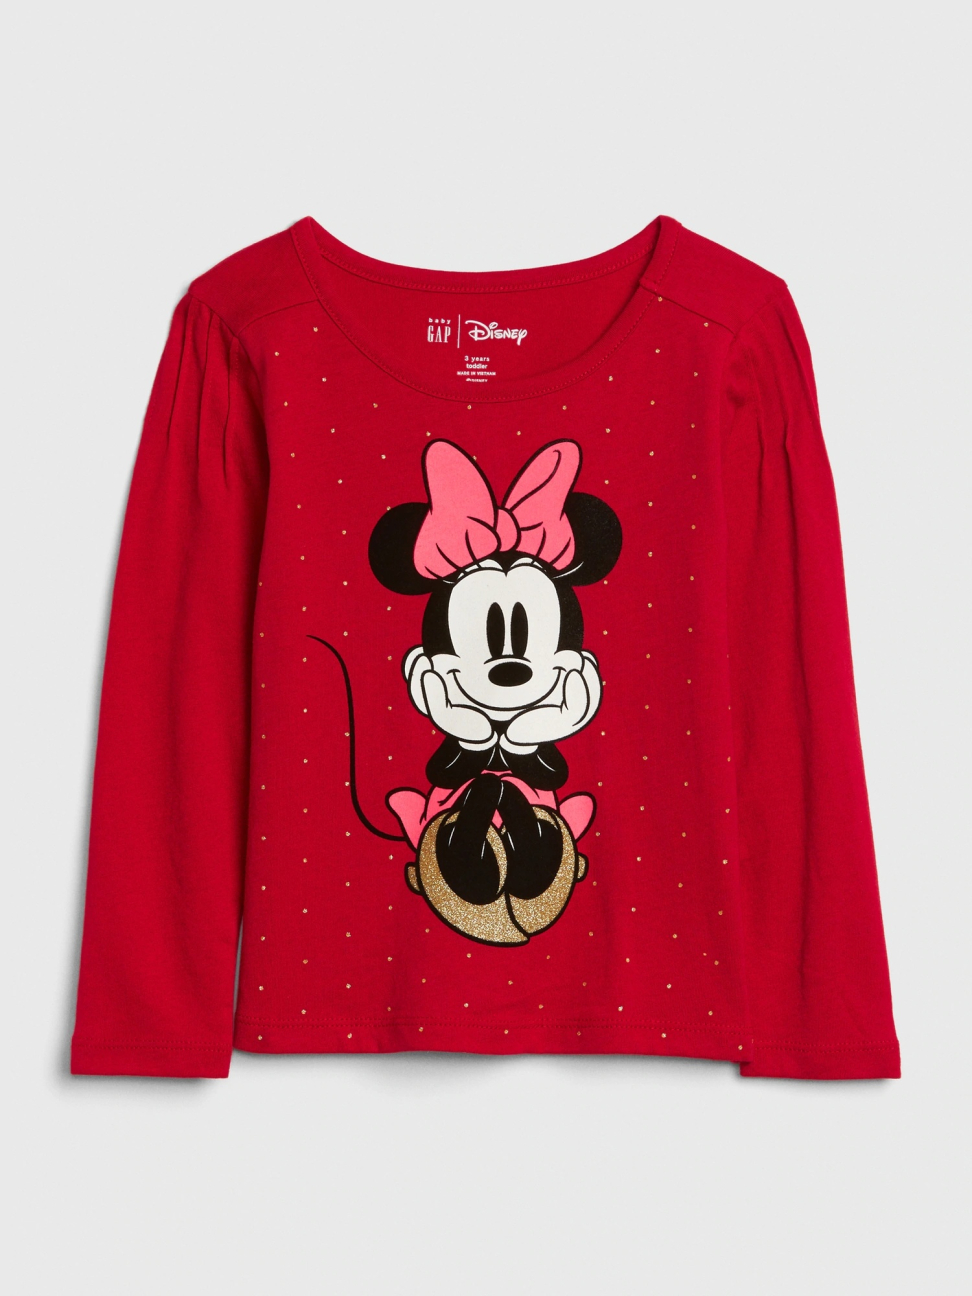 女幼童裝|Gap x Disney迪士尼聯名 米妮印花圓領長袖T恤-摩登紅色